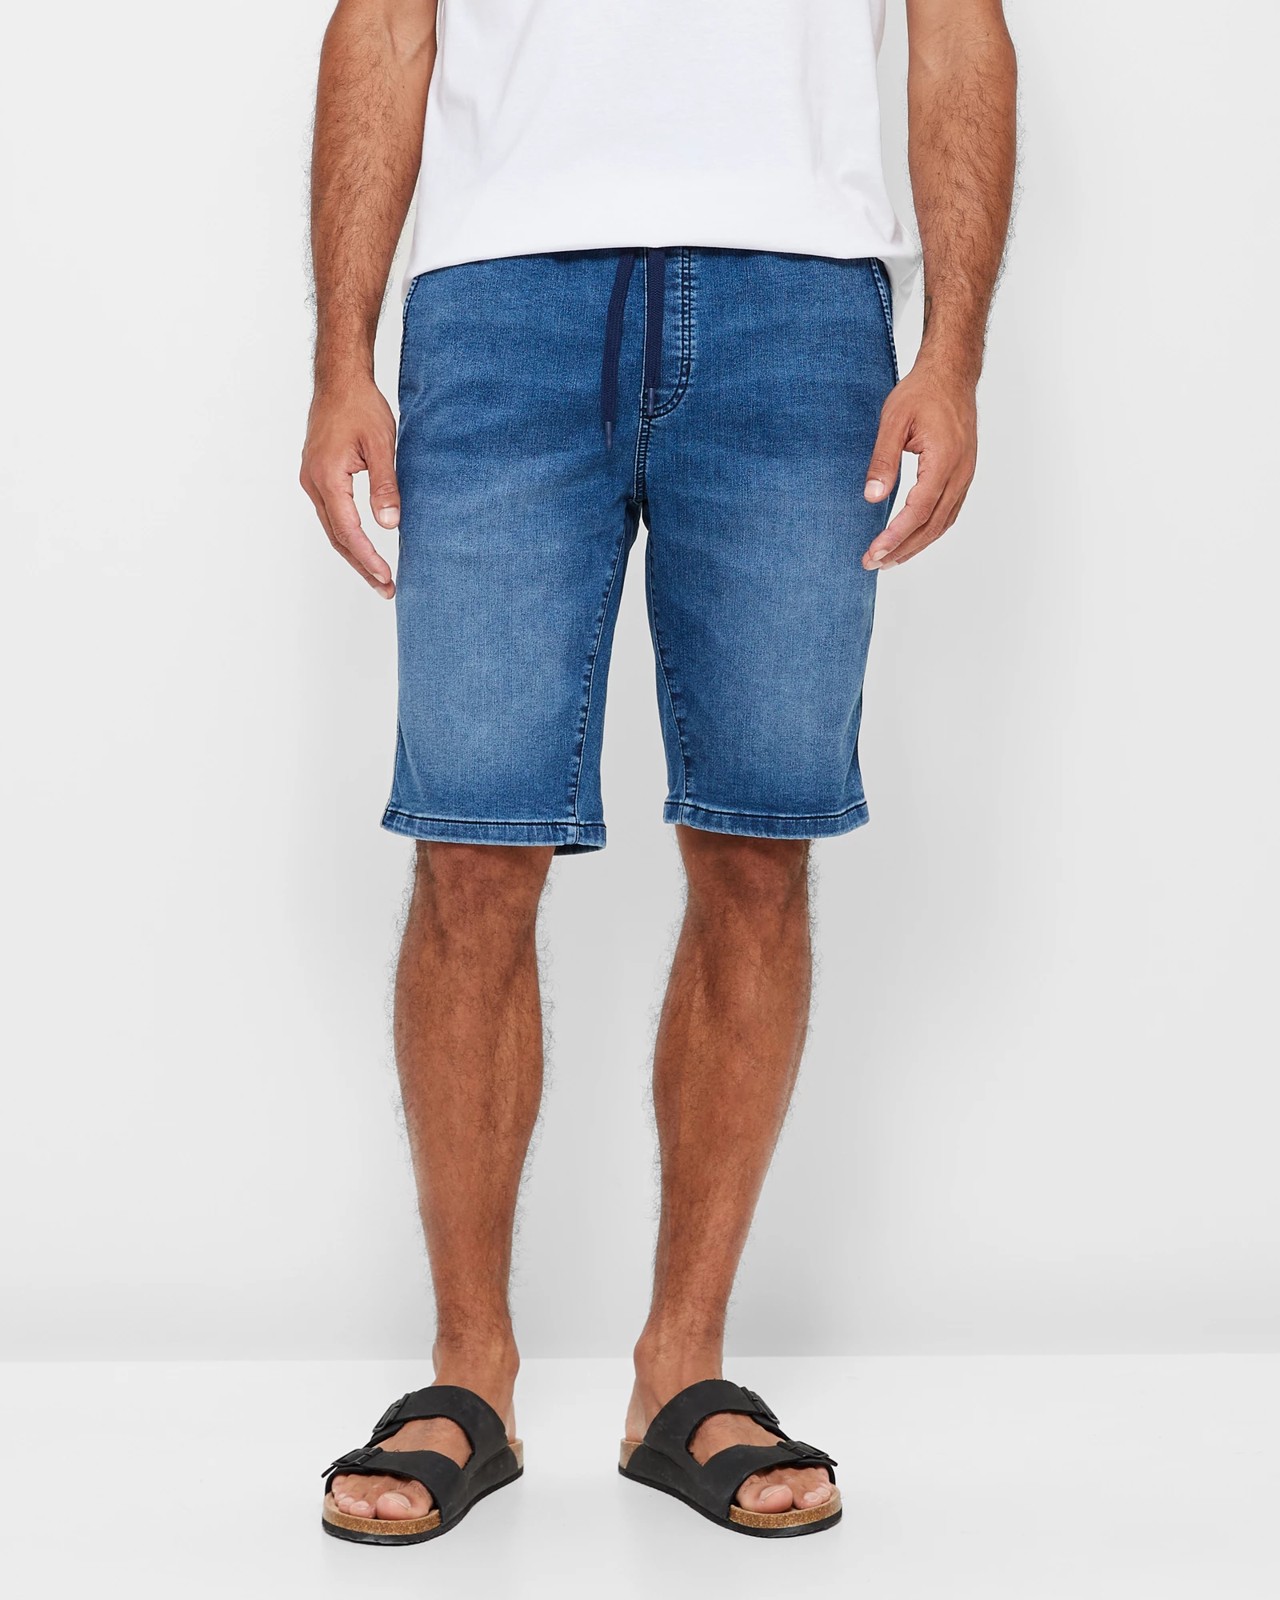 Knit Denim Shorts | Target Australia